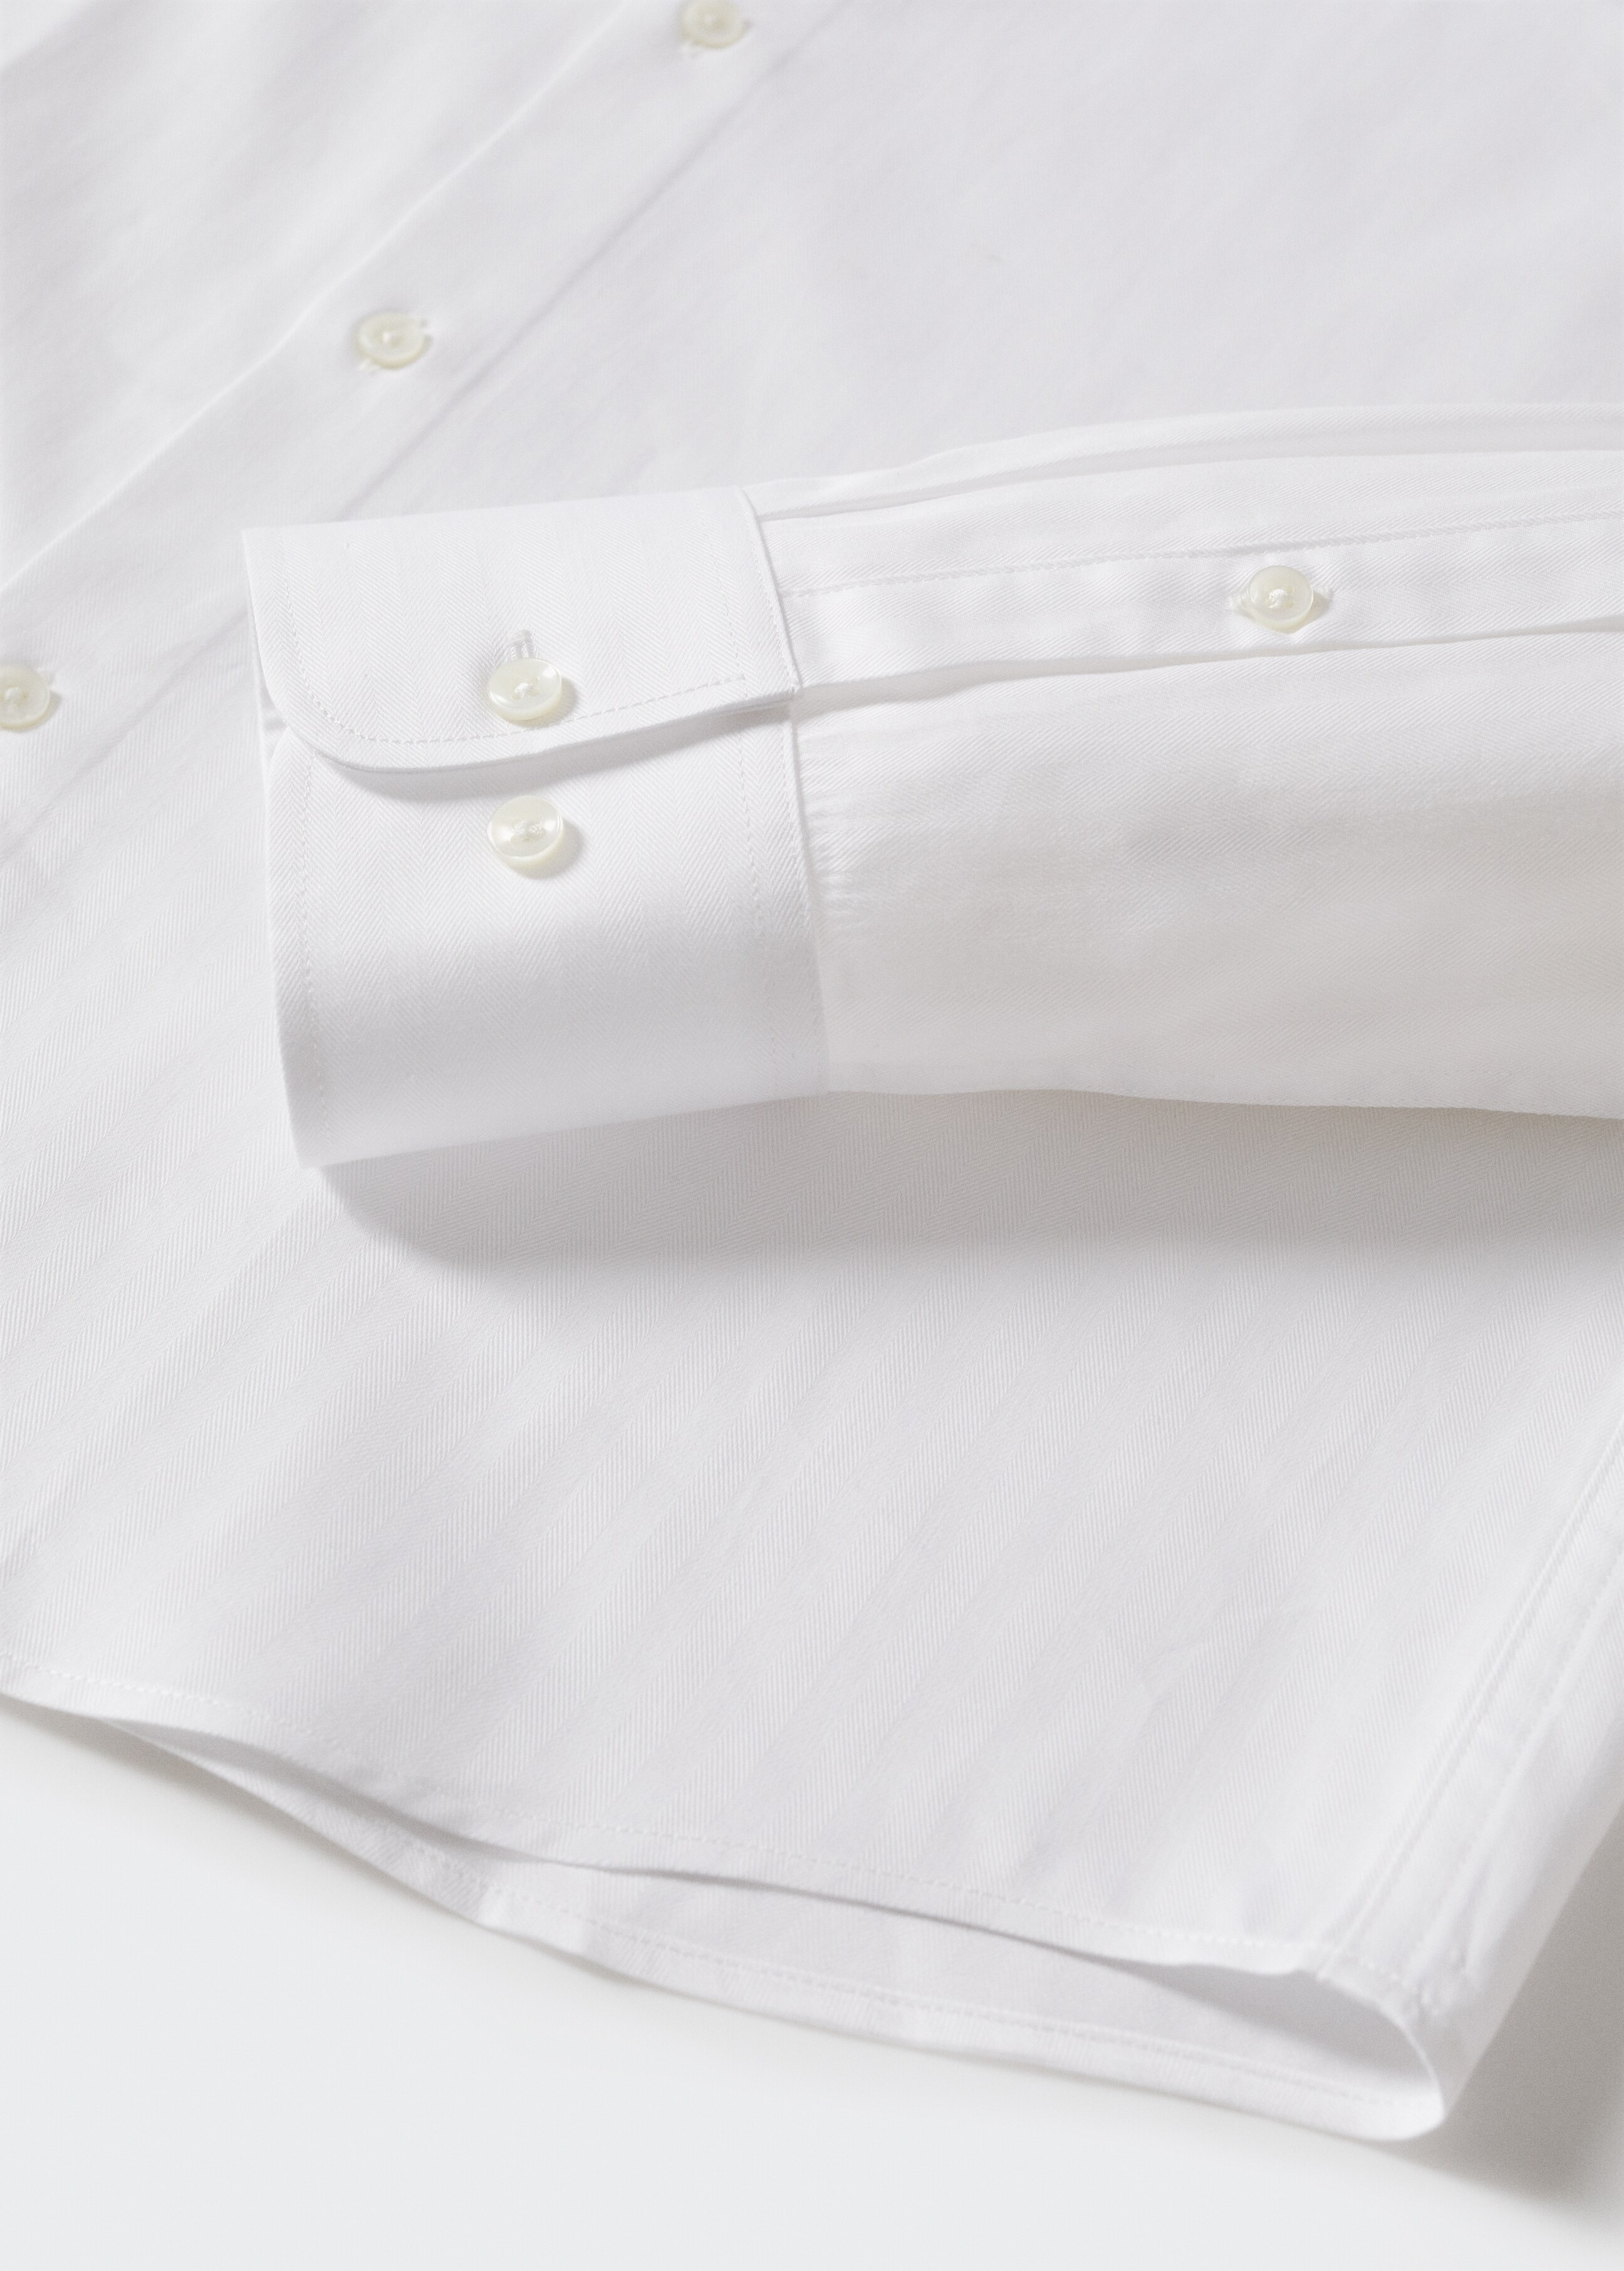 Camisa traje slim fit algodón - Detalle del artículo 7